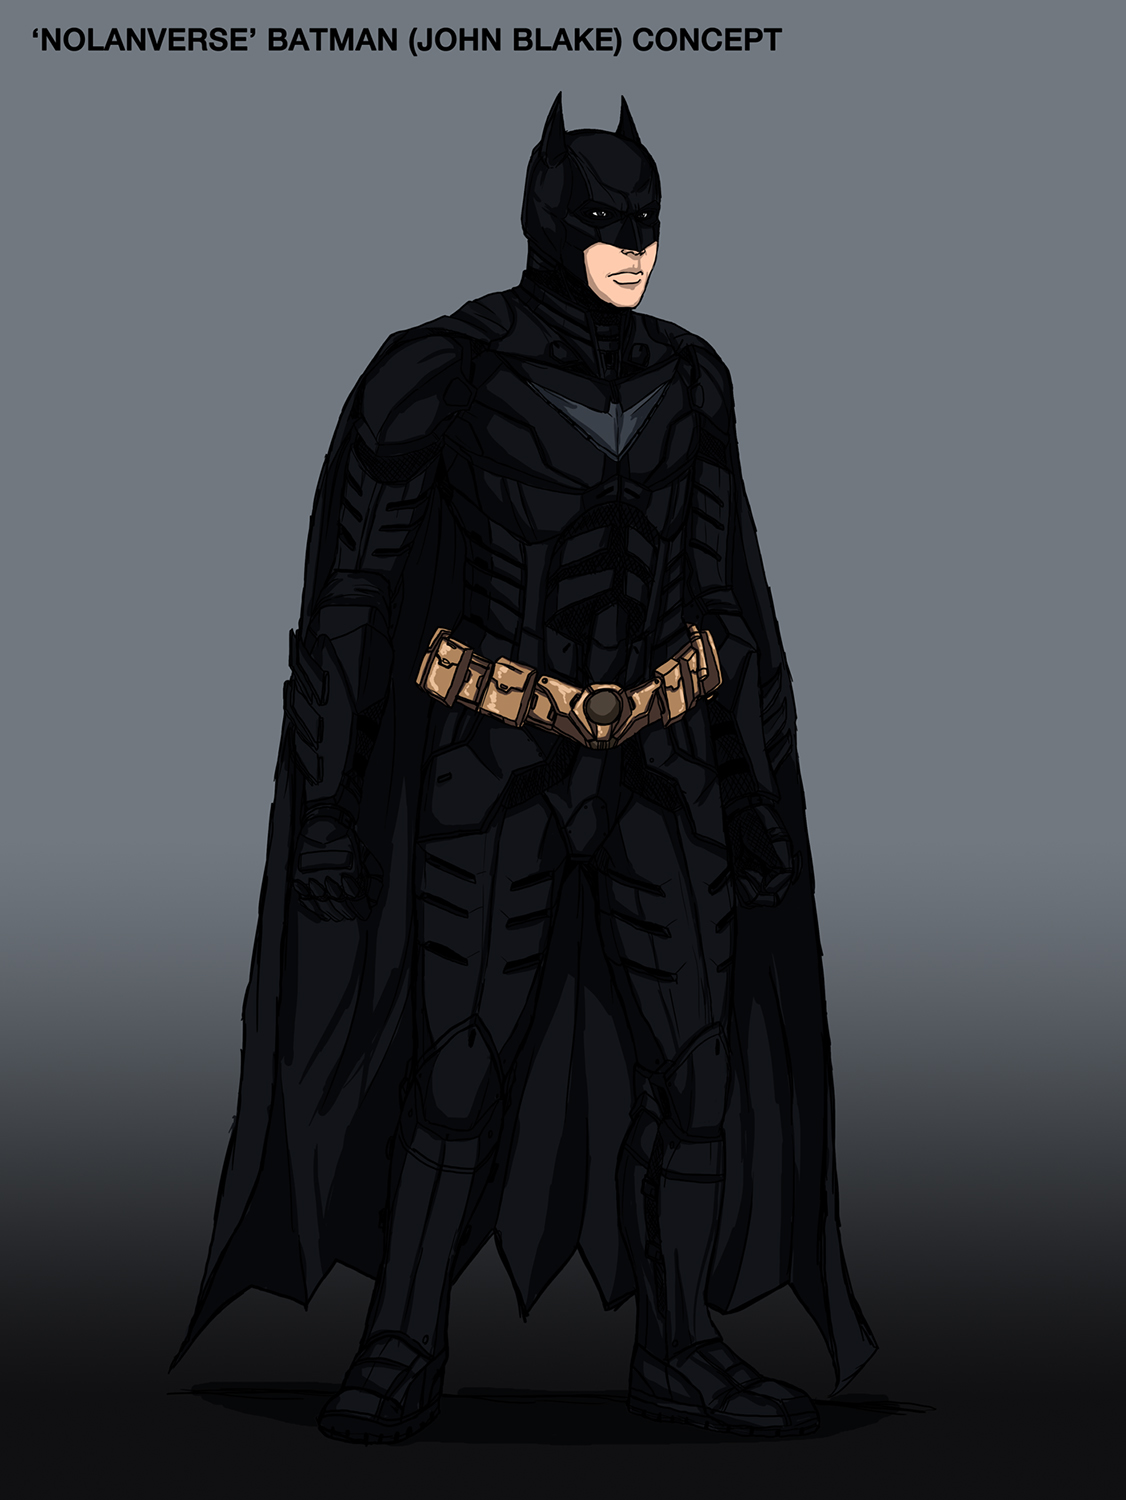 Nolanverse' Batman (John Blake) Concept Design by cpuhuman on DeviantArt